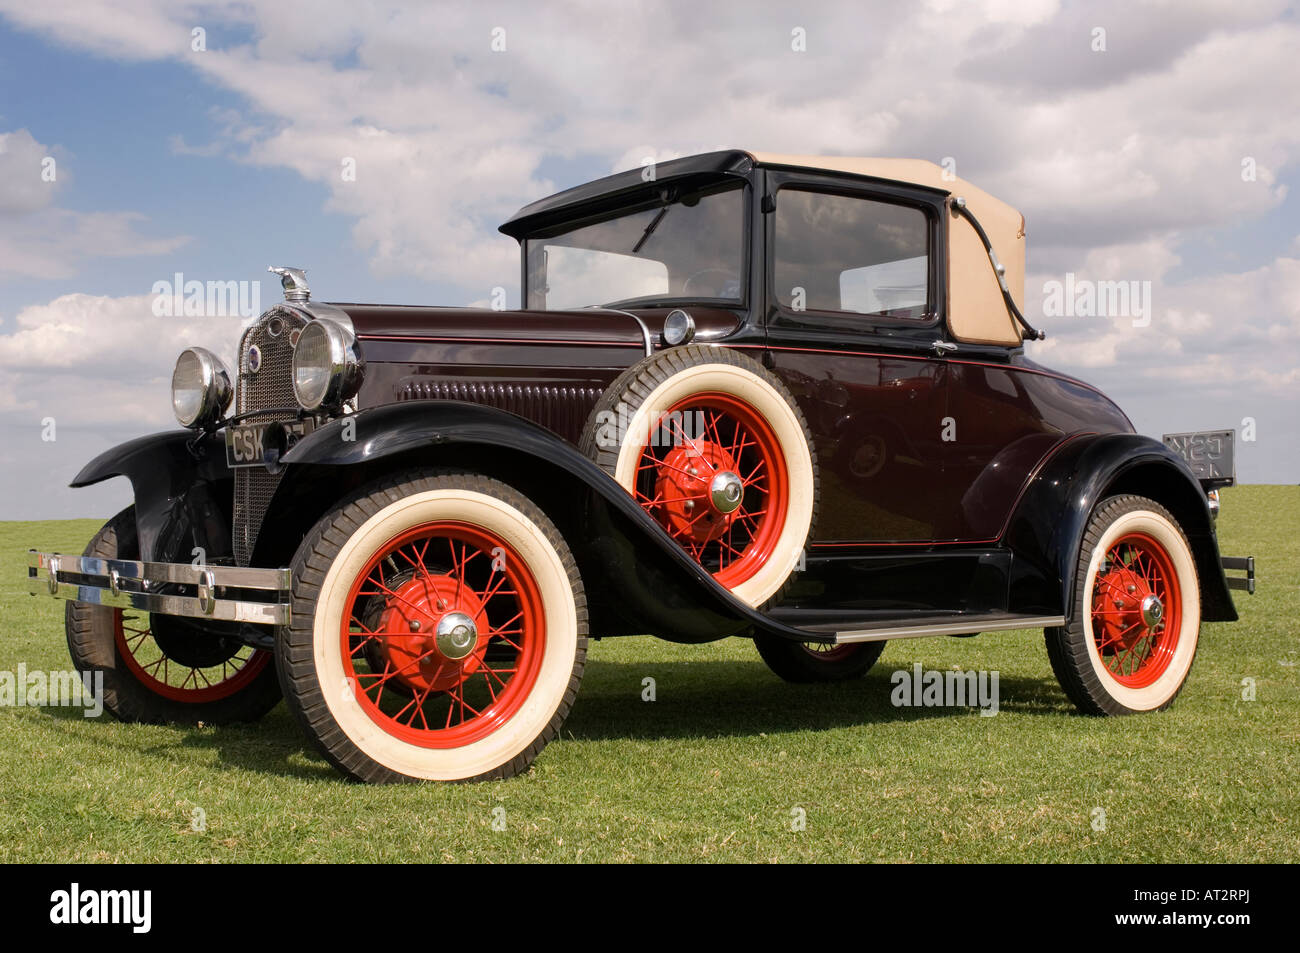 Un classique modèle américain une Ford Motor car sur l'herbe au soleil Banque D'Images